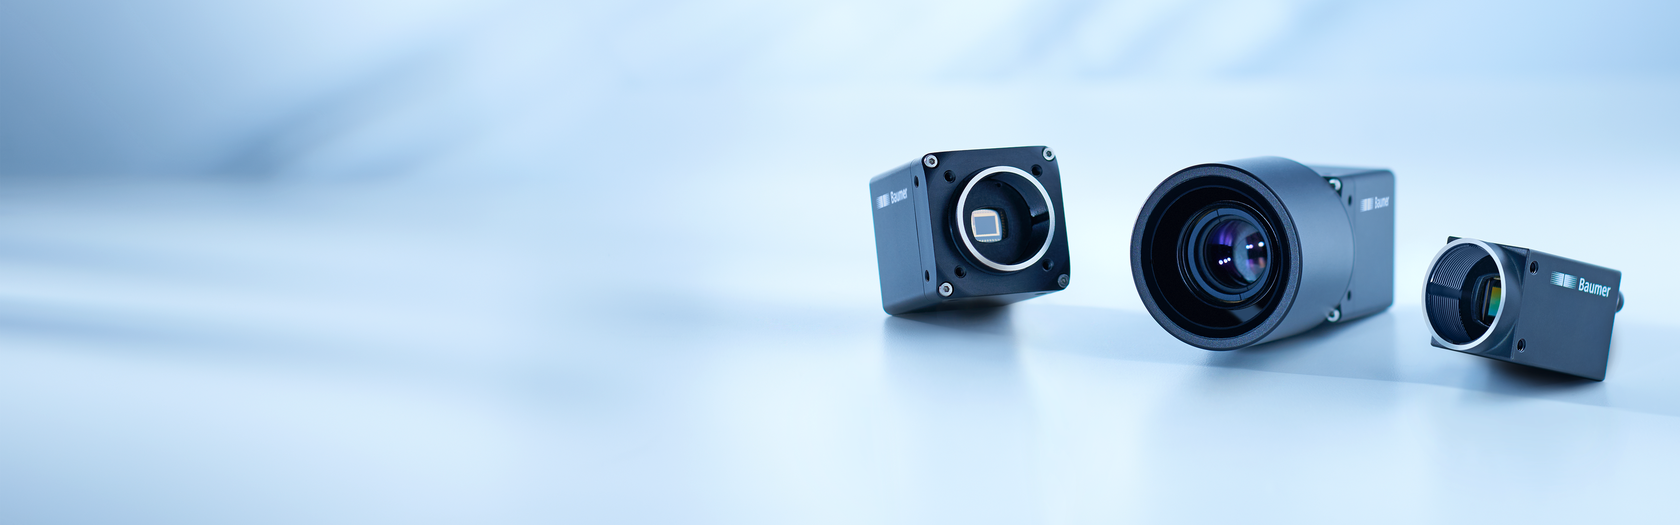 Caméras industrielles polyvalentes avec des capteurs CMOS ultra-récents